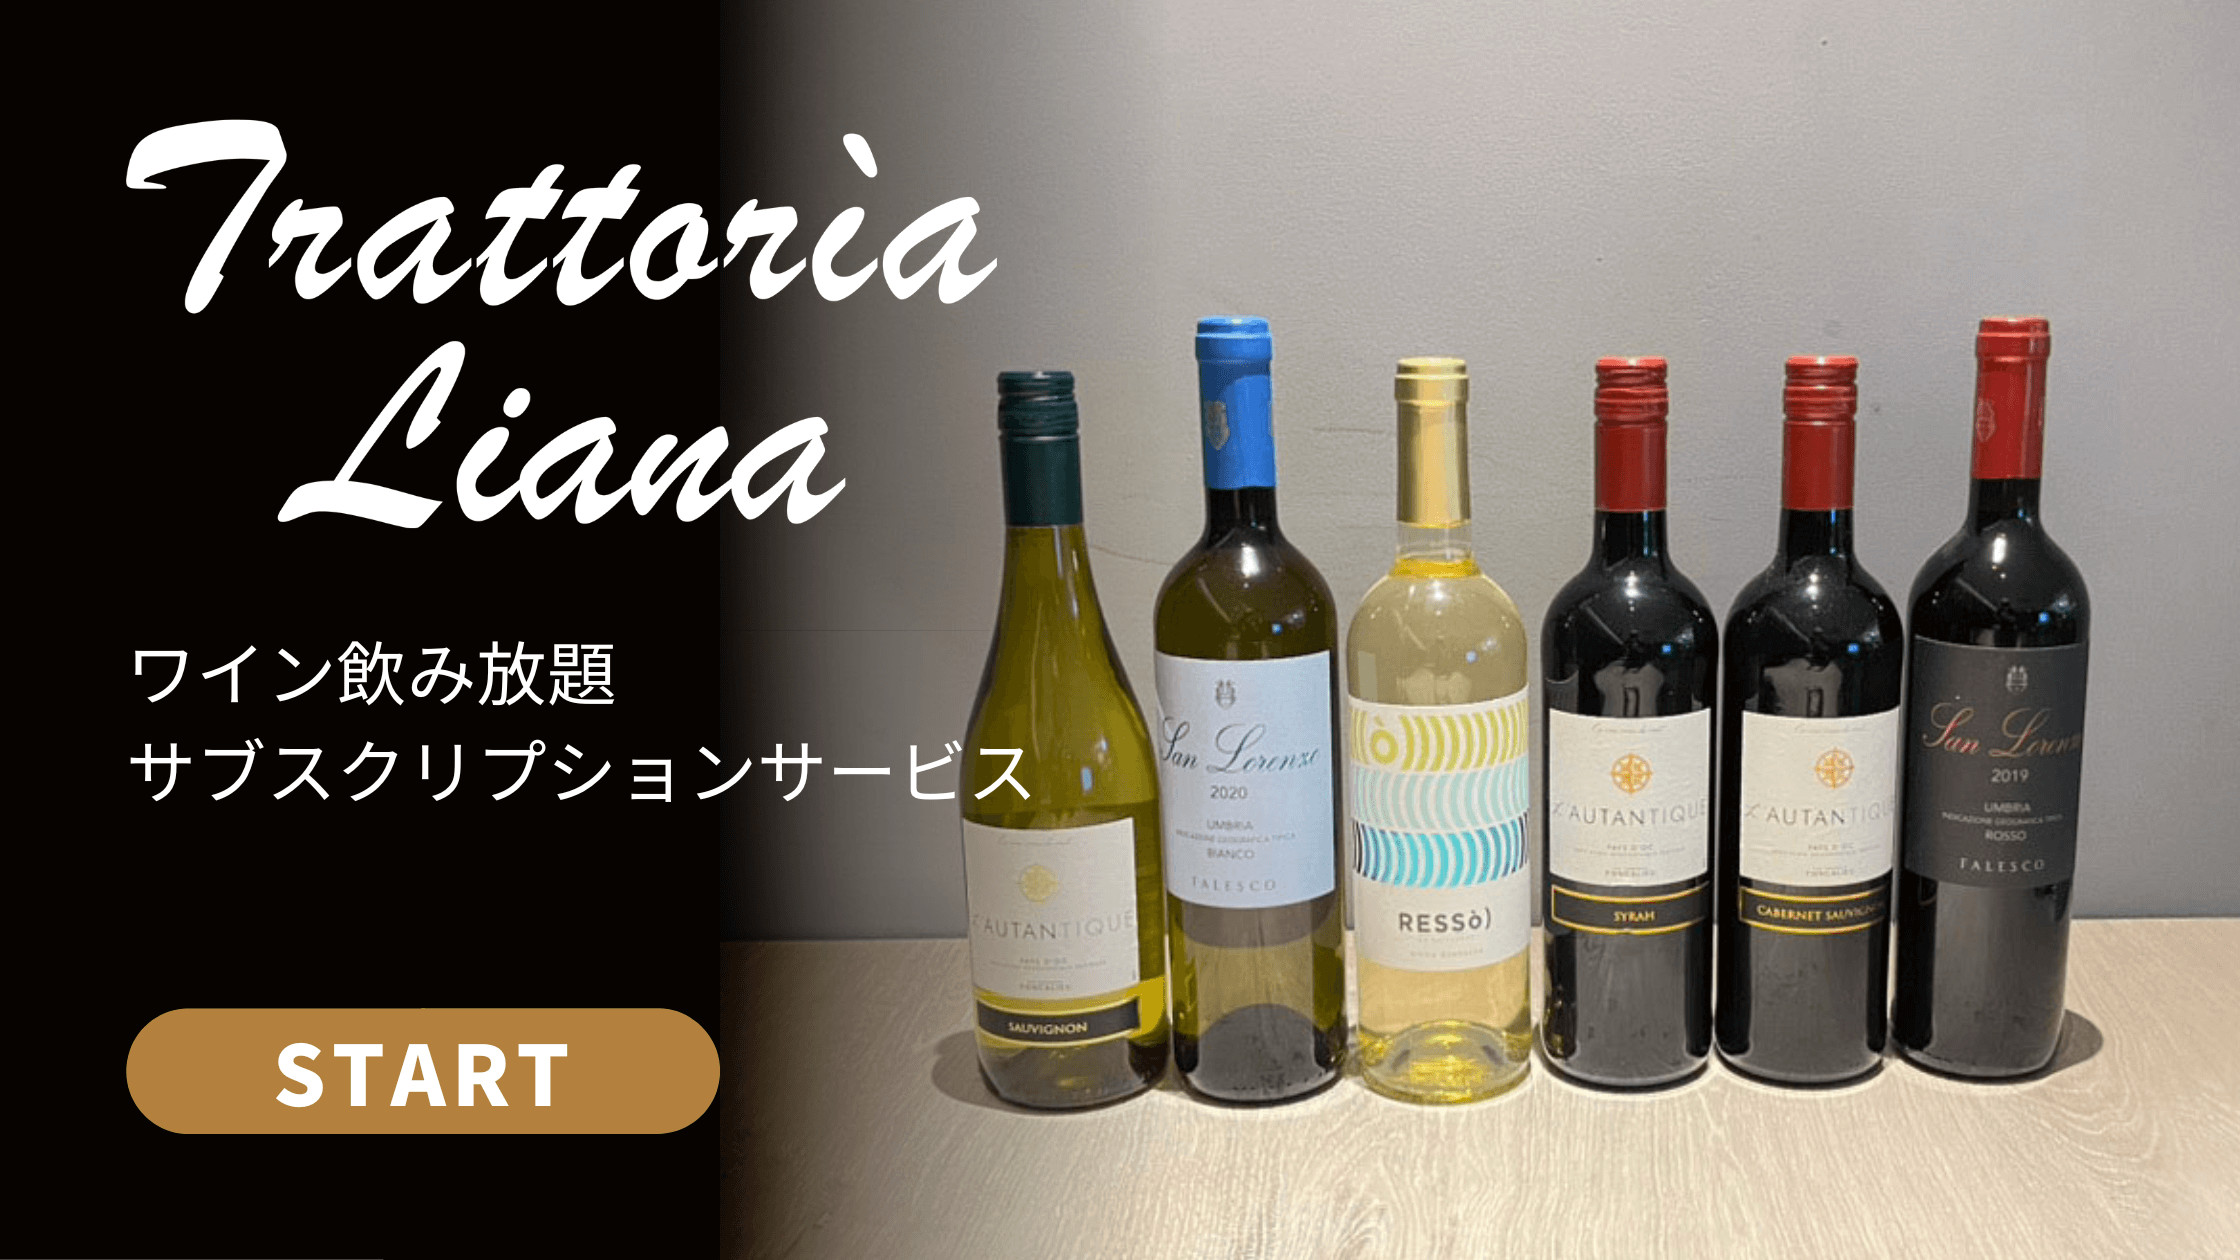 【トラットリア リアナ 名古屋】1回2時間制ワイン飲み放題 サブスクリプションサービスがスタート